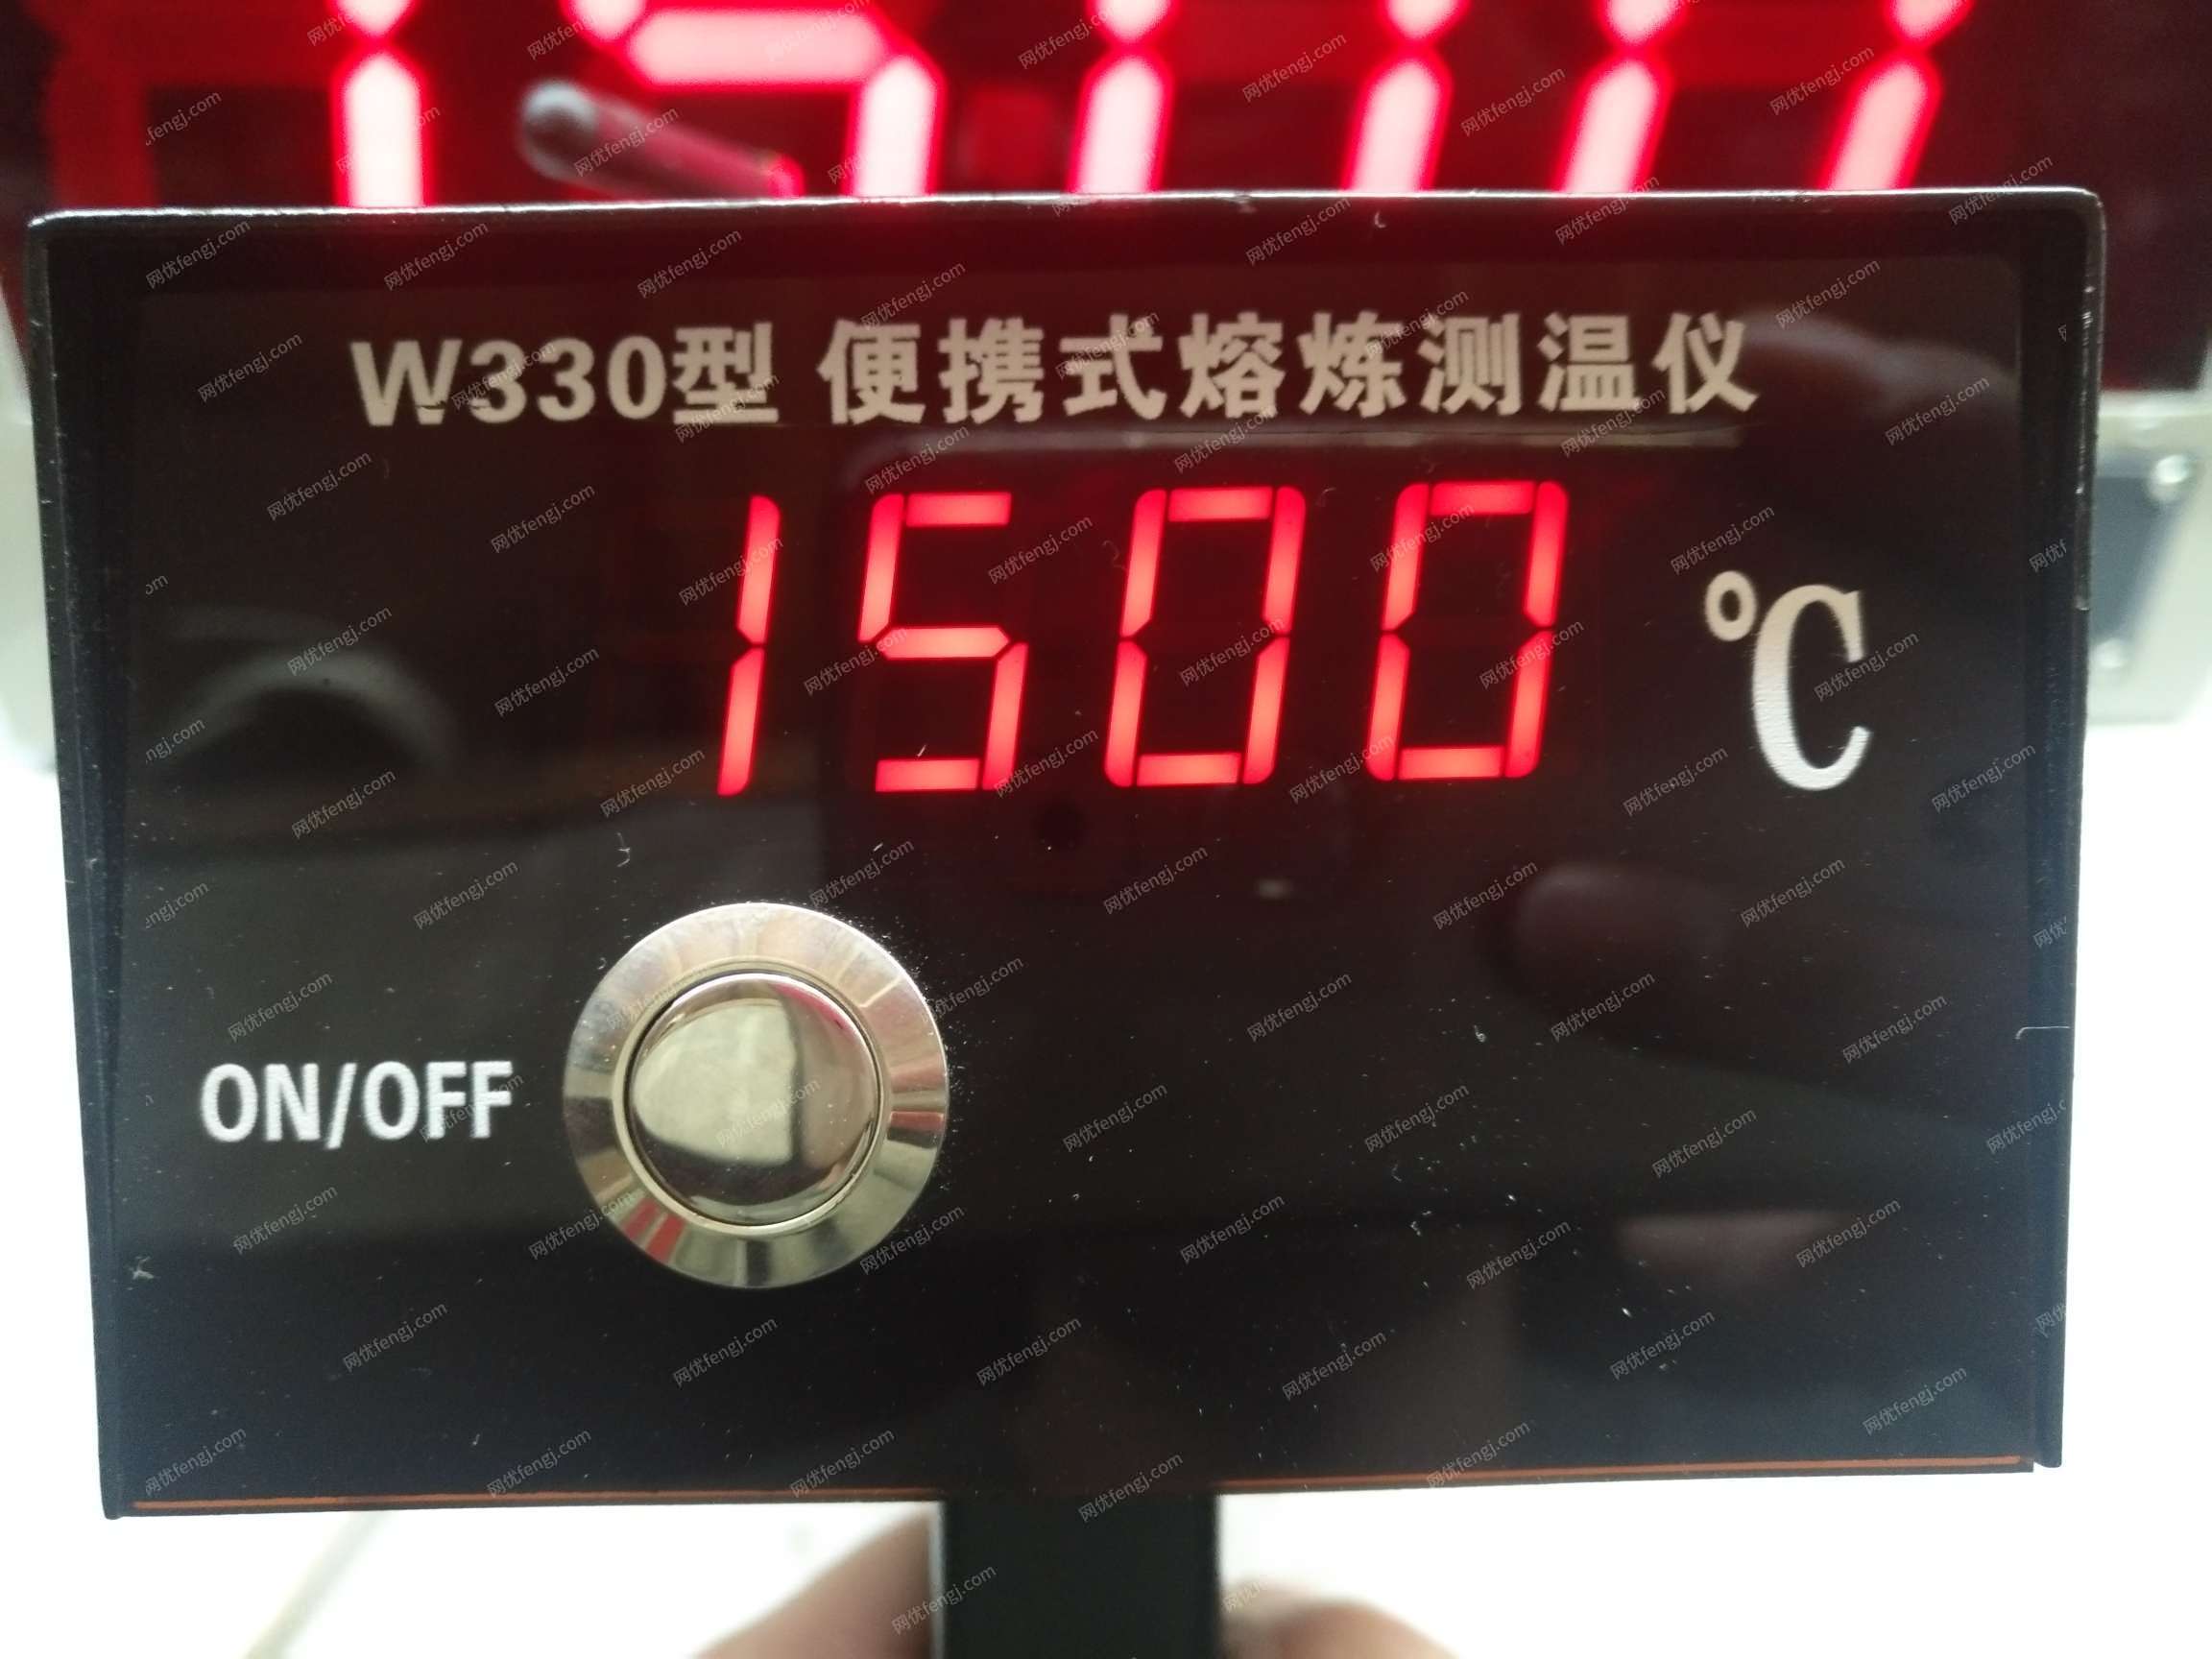 出售W330便携式测温仪 测温仪 炉前铁水测温仪 铁水测温仪 测温枪